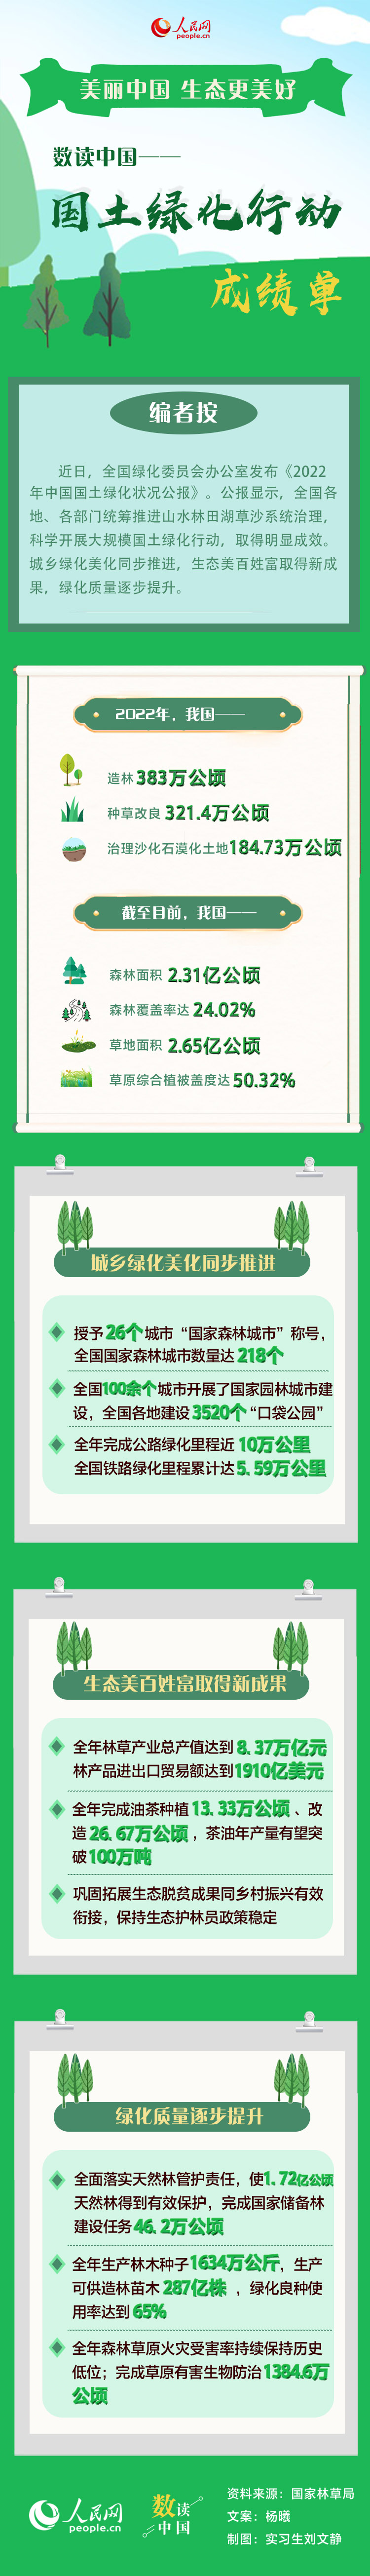 数读中国——一图速览中国国土绿化行动成绩单